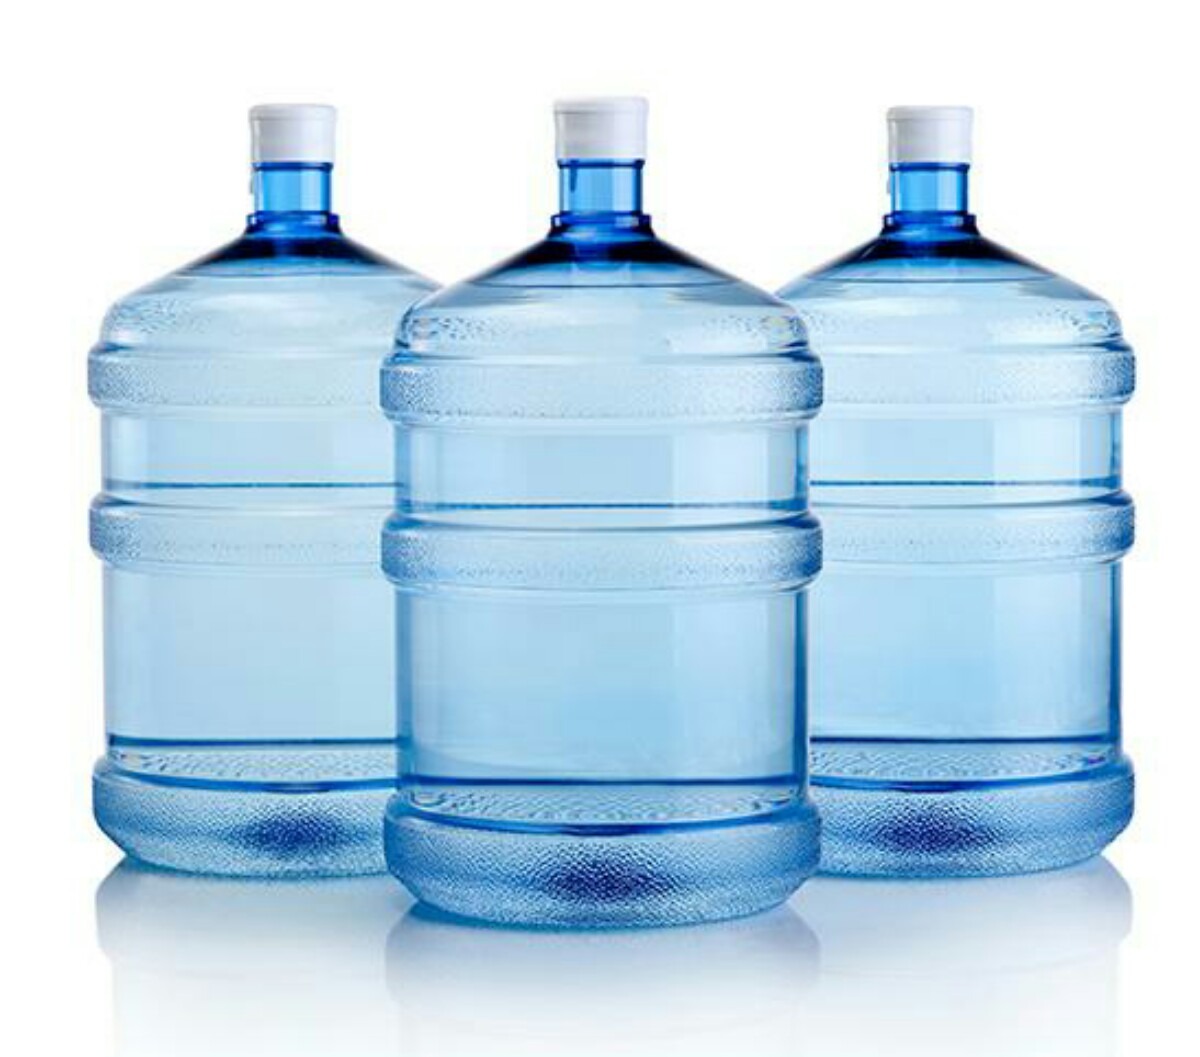 Estudio diferencia de precios en venta bidones de agua en Antofagasta